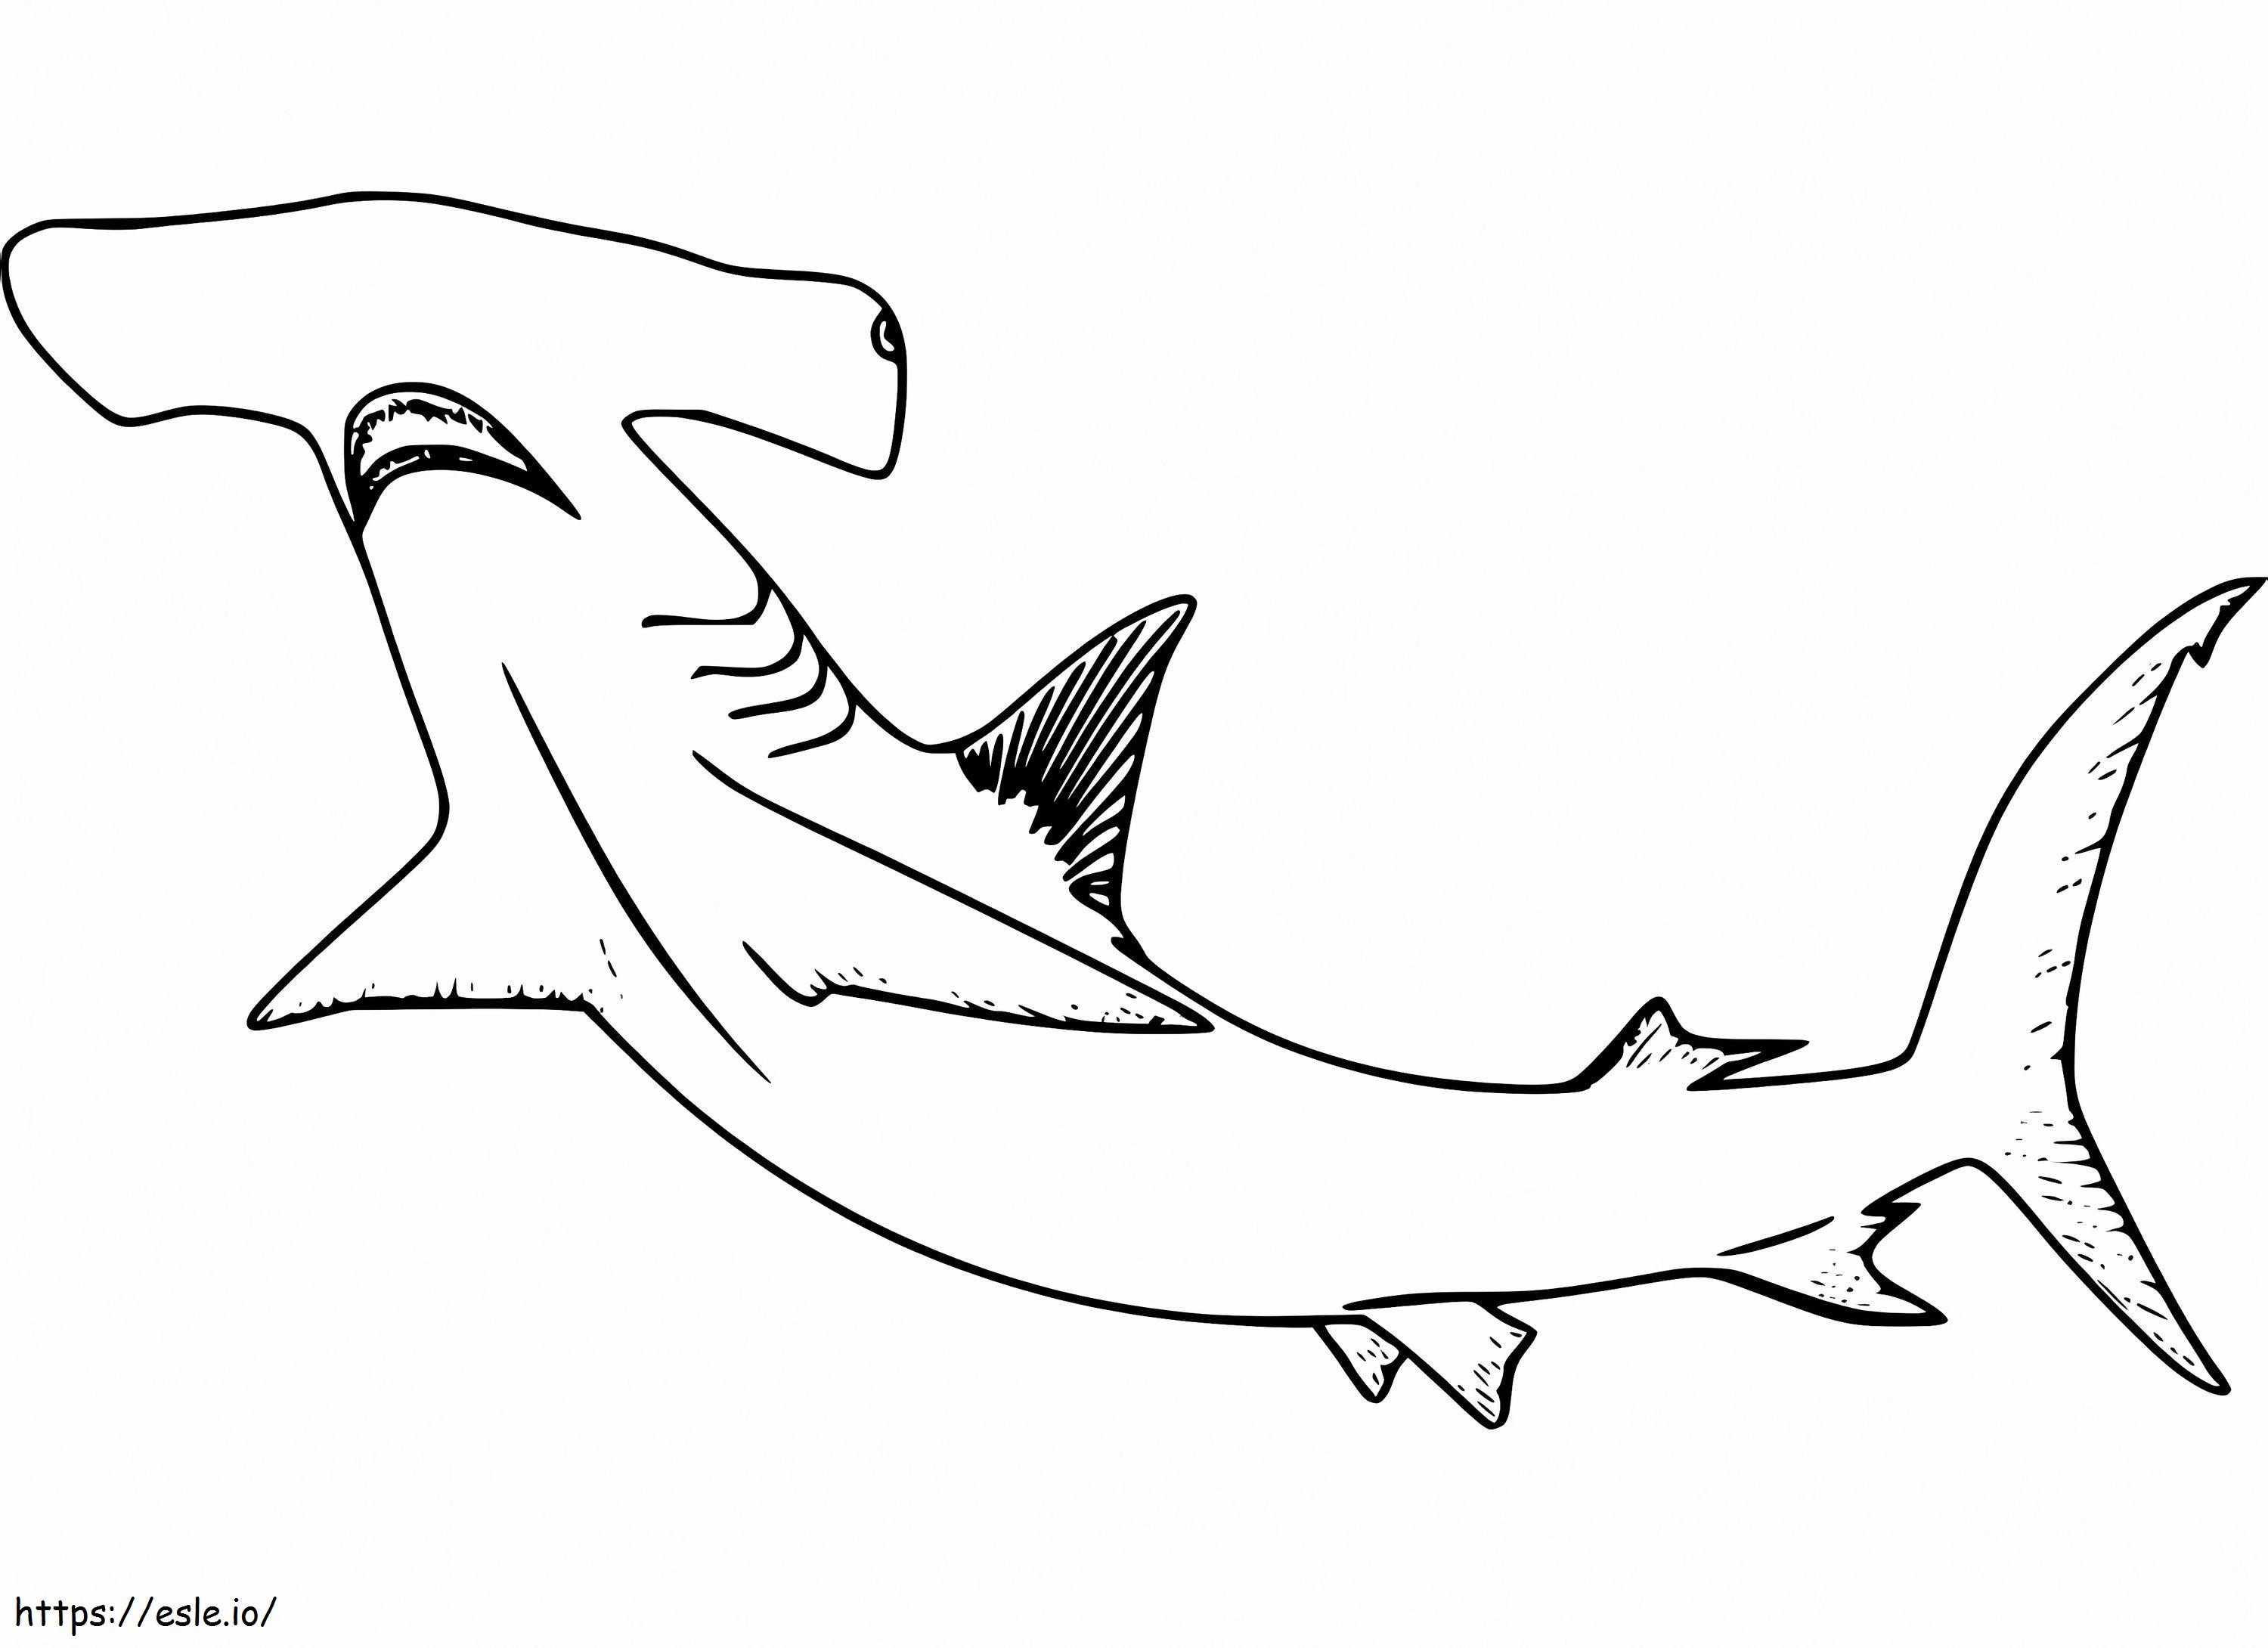 Tubarão-martelo 8 para colorir